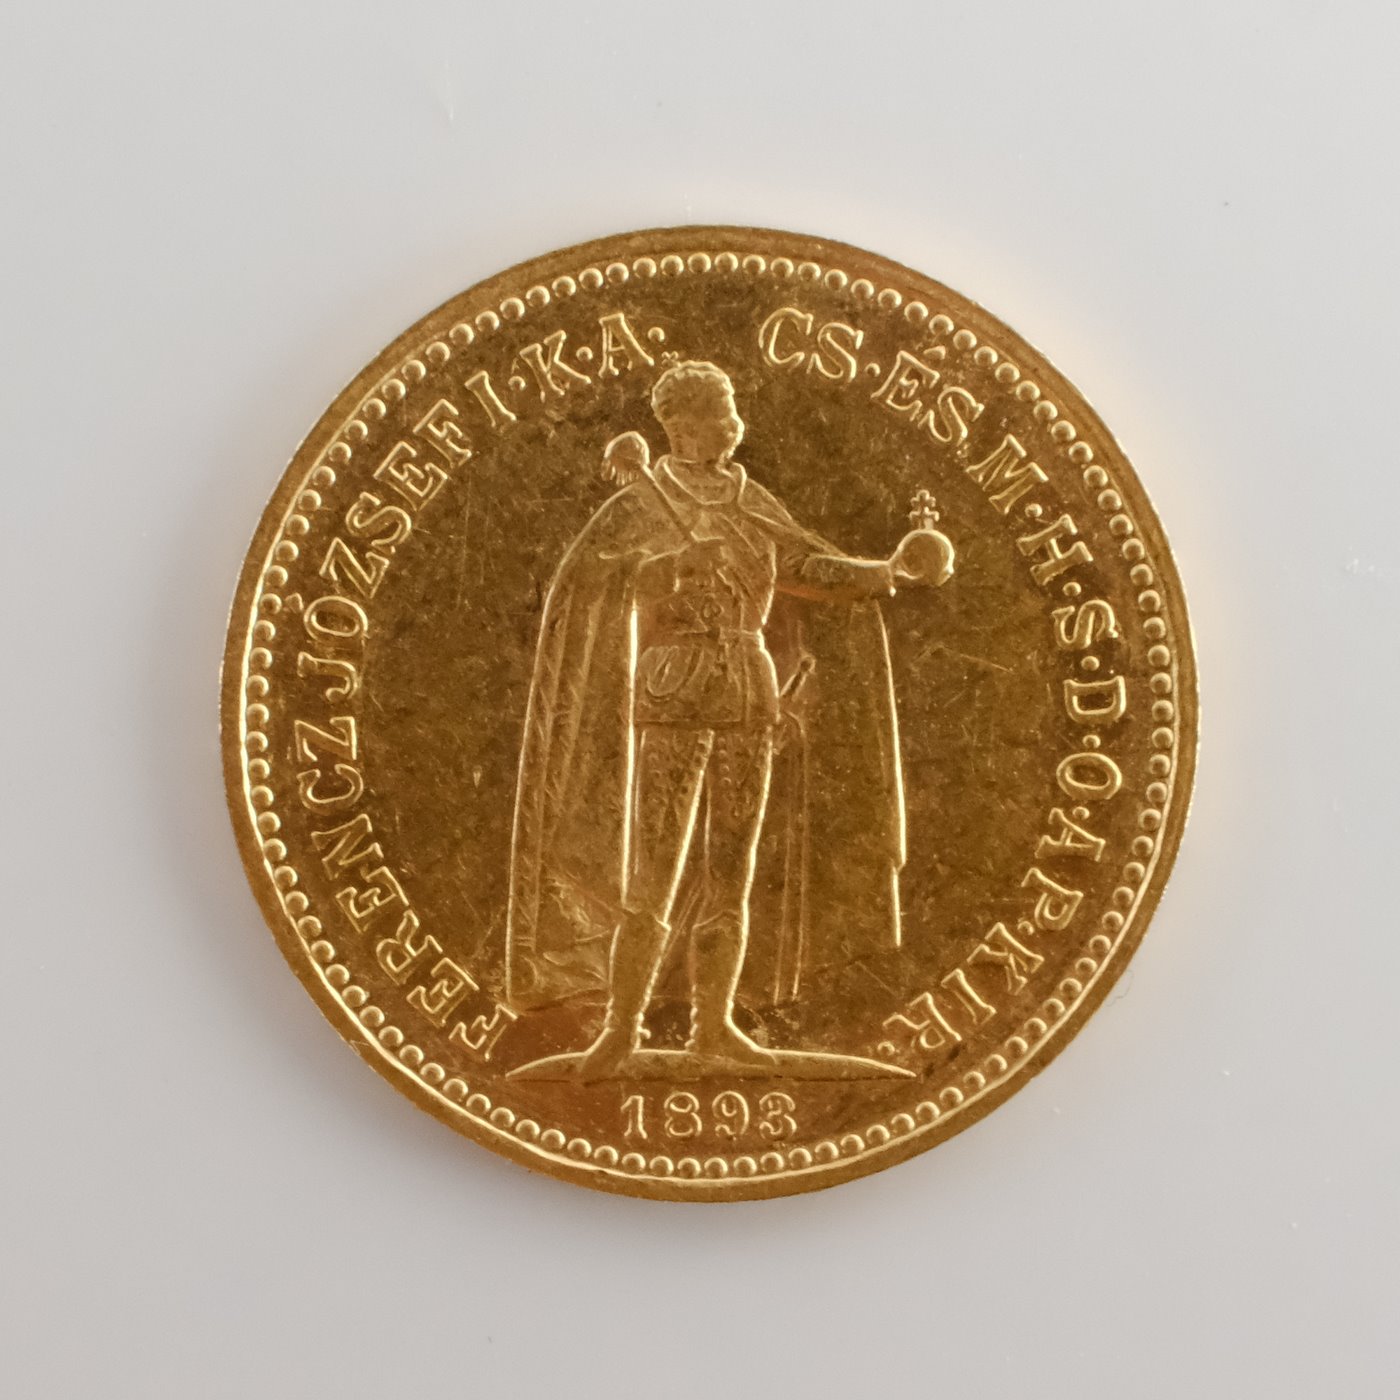 Mince - Rakousko Uhersko zlatá 10 Koruna 1893 K.B. uherská, zlato 900/1000, hrubá hmotnost mince 3,387g